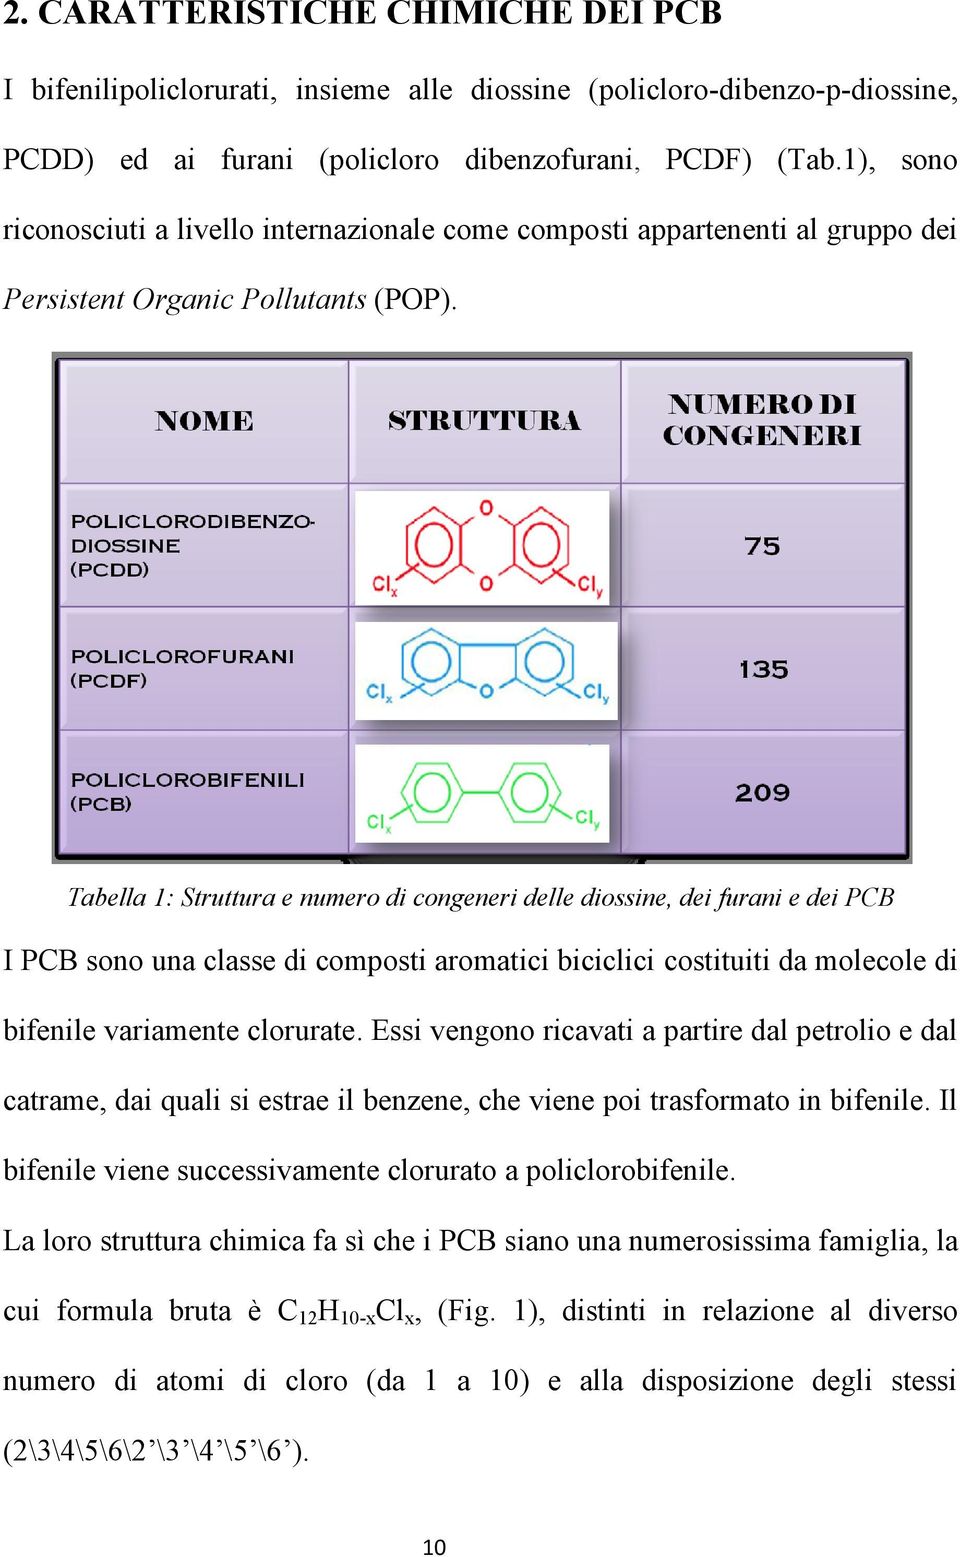 Tabella 1: Struttura e numero di congeneri delle diossine, dei furani e dei PCB I PCB sono una classe di composti aromatici biciclici costituiti da molecole di bifenile variamente clorurate.